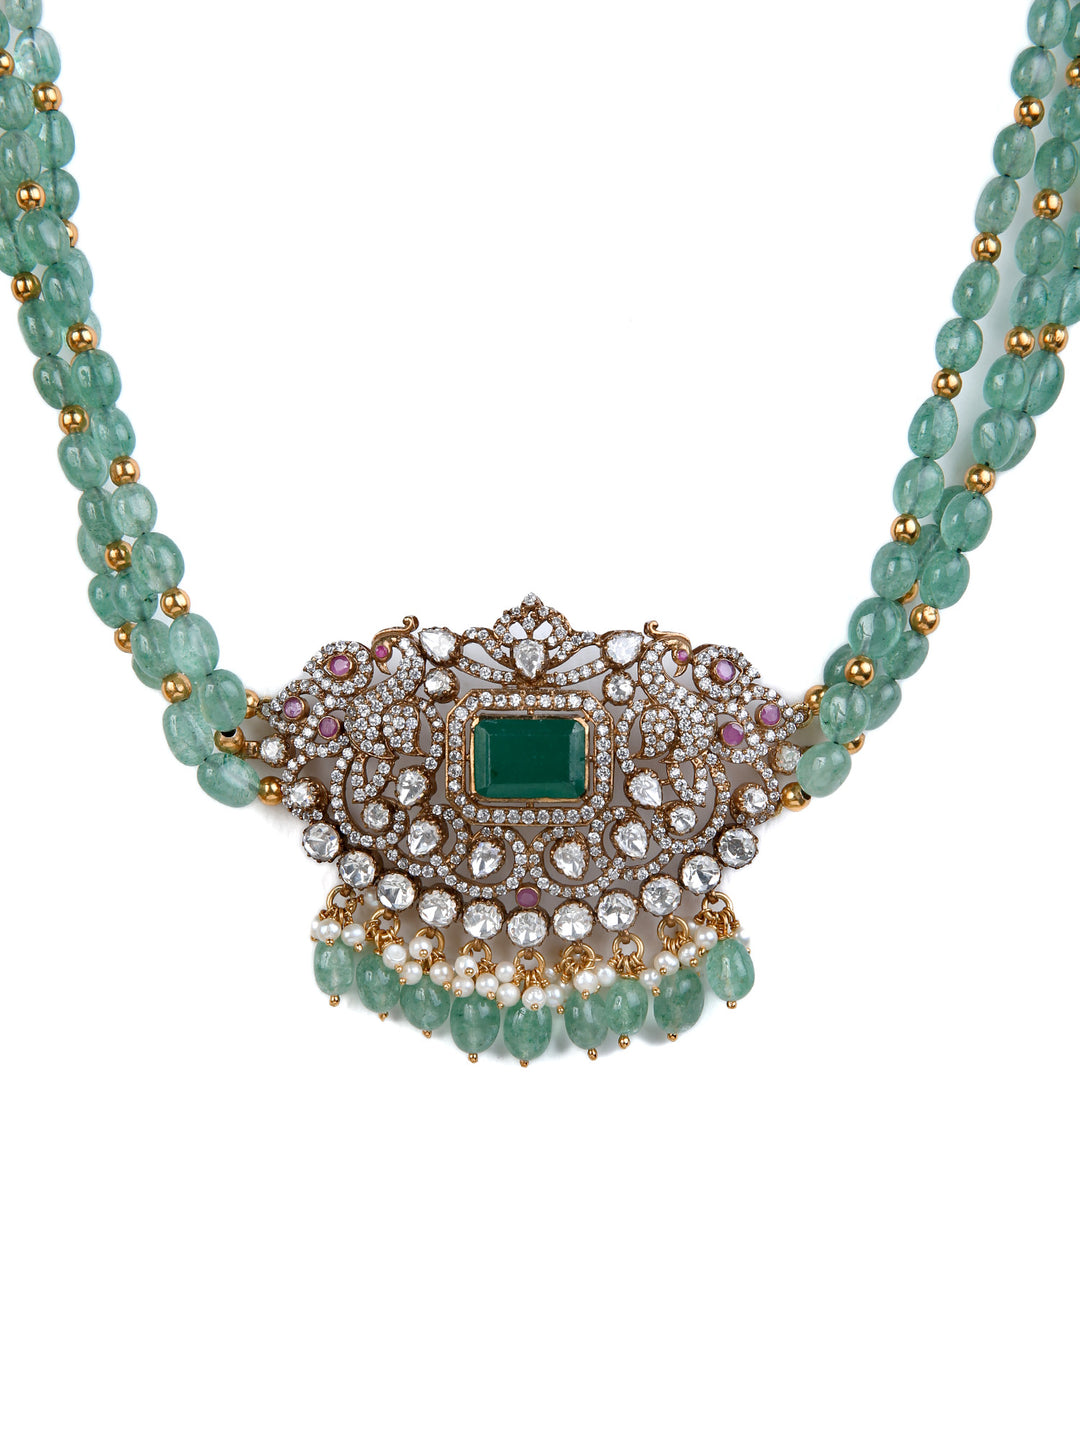 925 Silver Victorian Sitara necklace